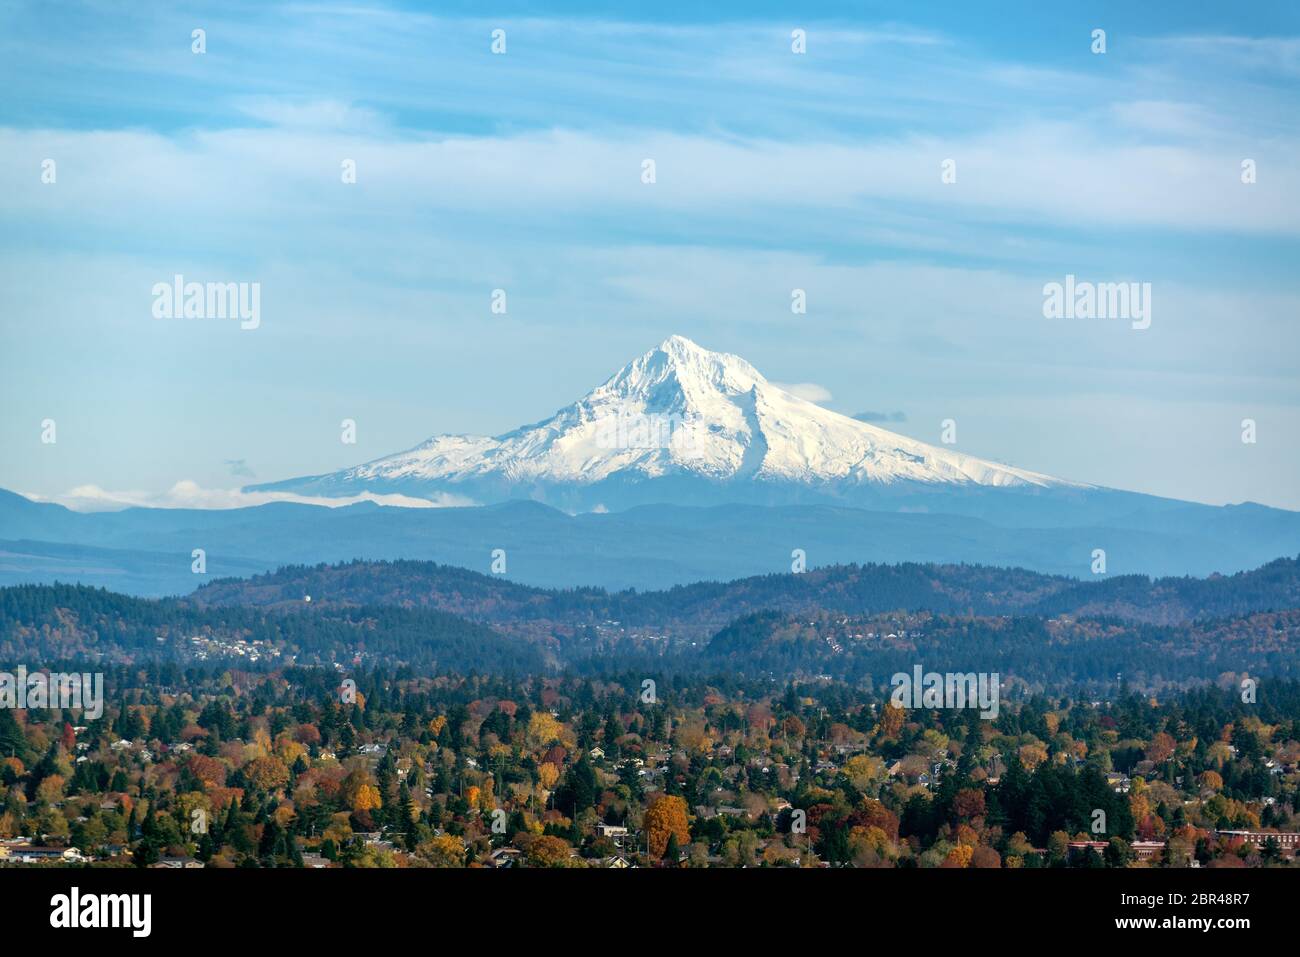 Vista de Mt. El capó y las colinas cubiertas de bosque visto desde Portland, Oregón Foto de stock